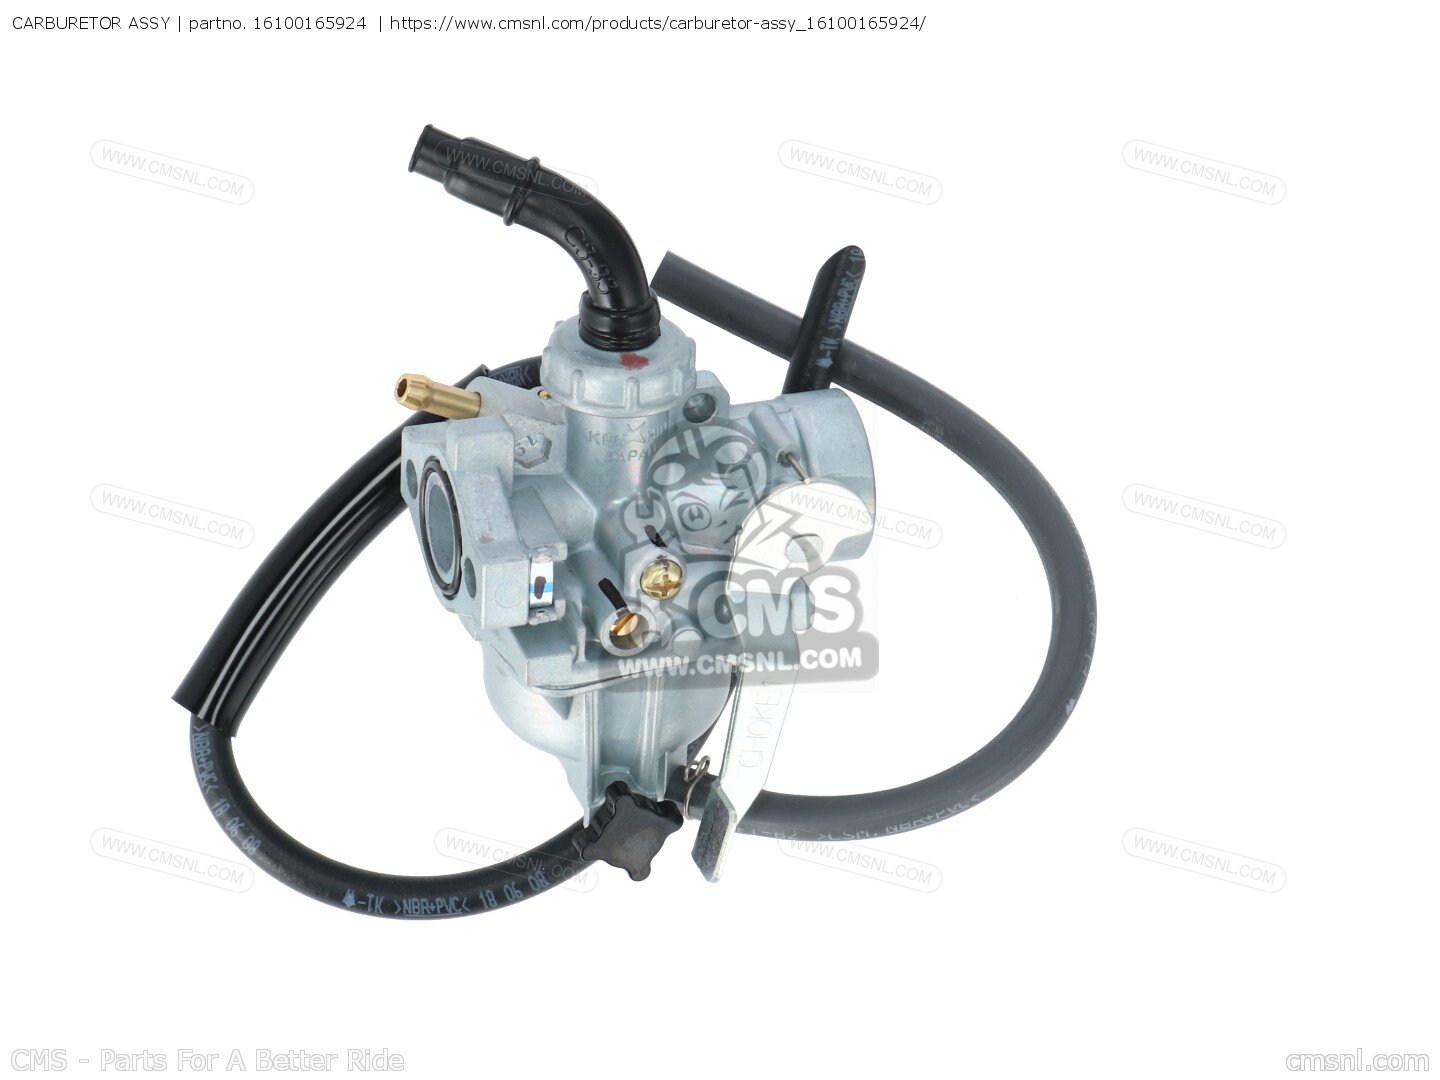 16100165924: Carburetor Assy Honda - buy the 16100-165-924 at CMSNL